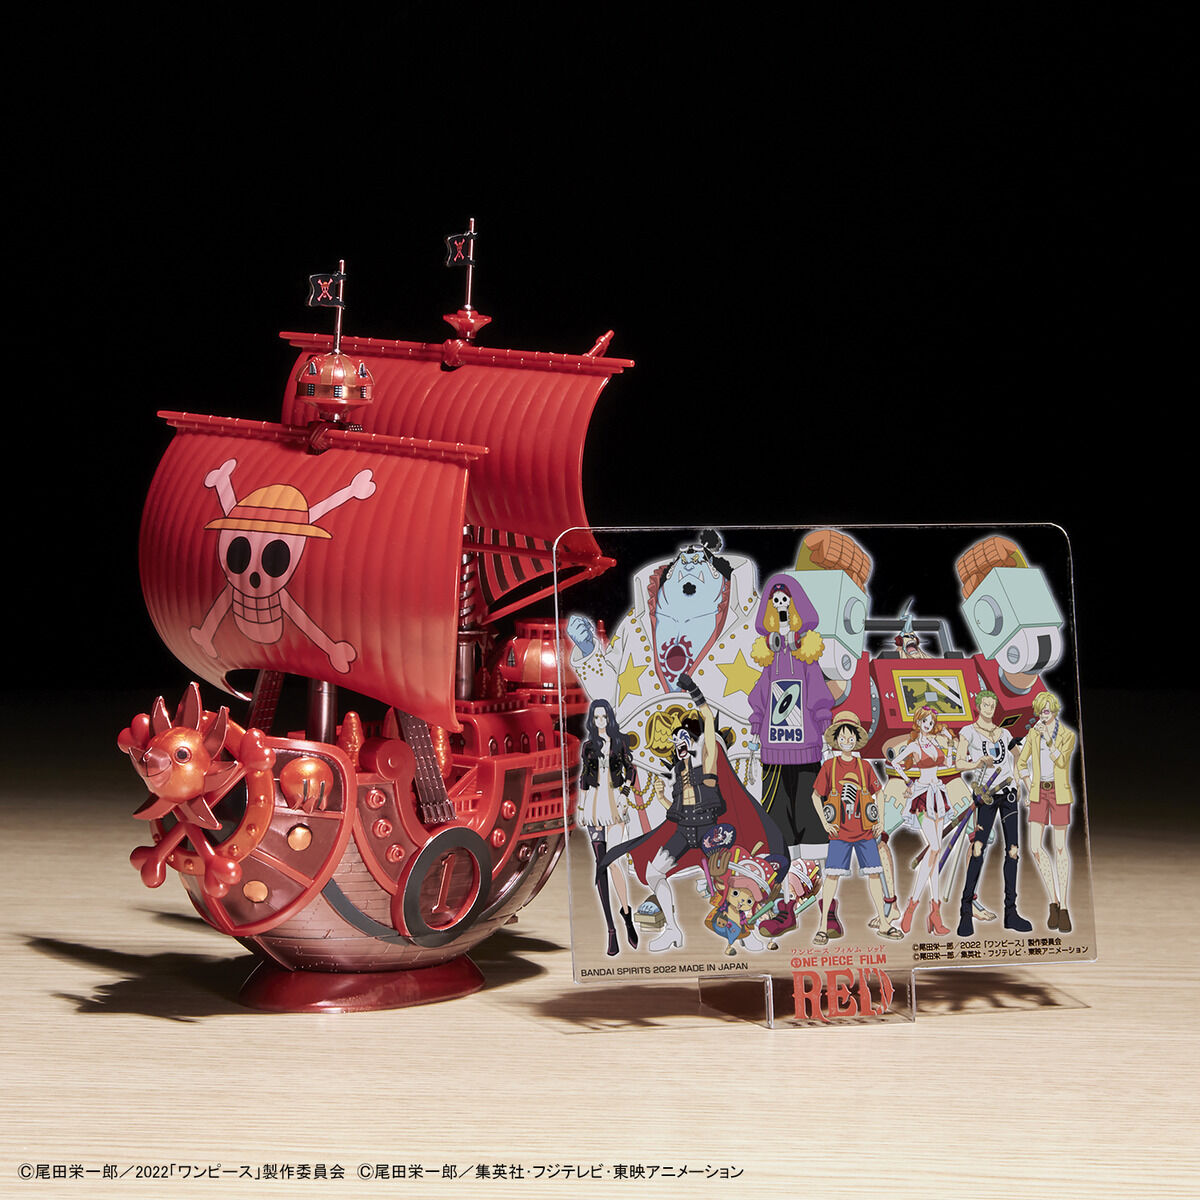 ワンピース偉大なる船コレクション サウザンド・サニー号「FILM RED」公開記念カラーVer. 08